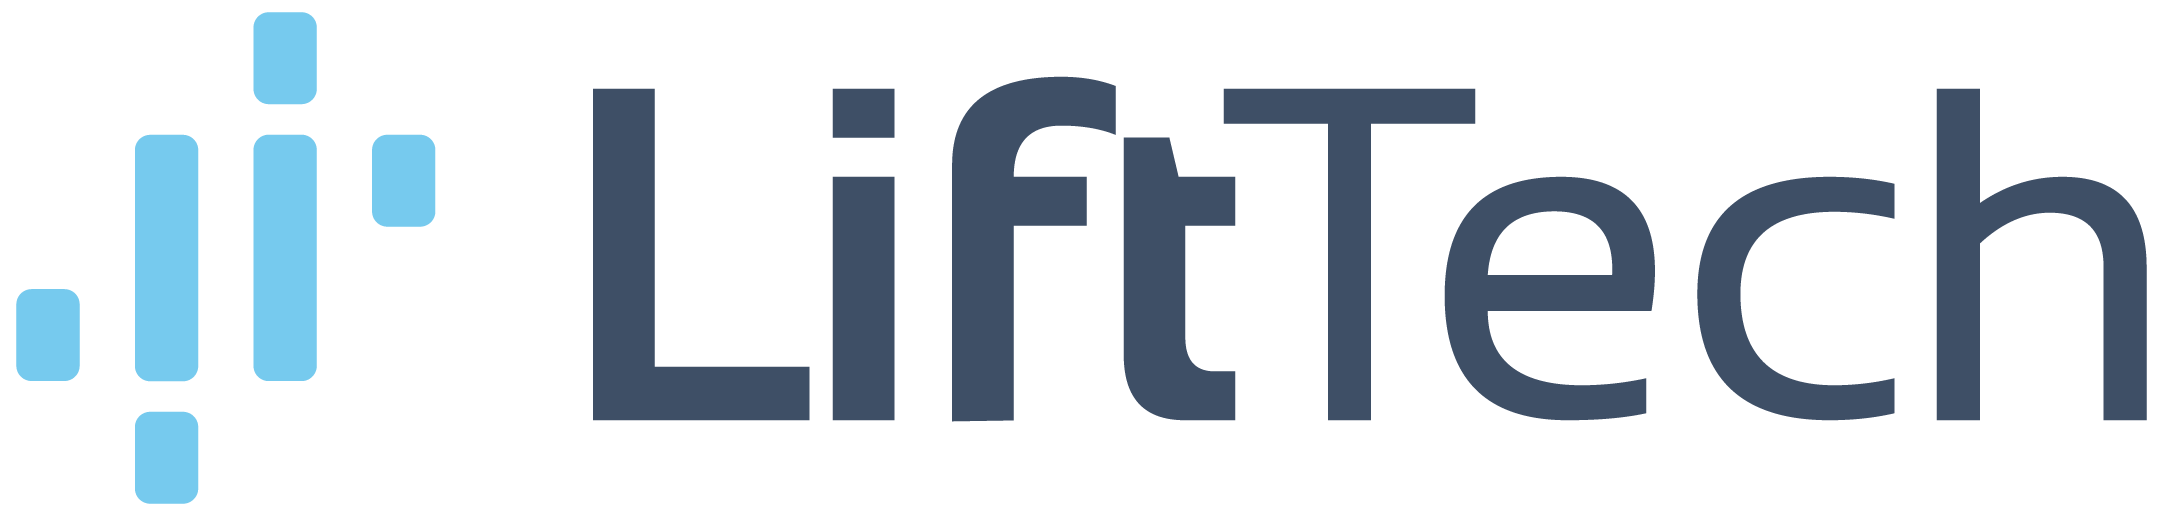 Lift Tech Logo